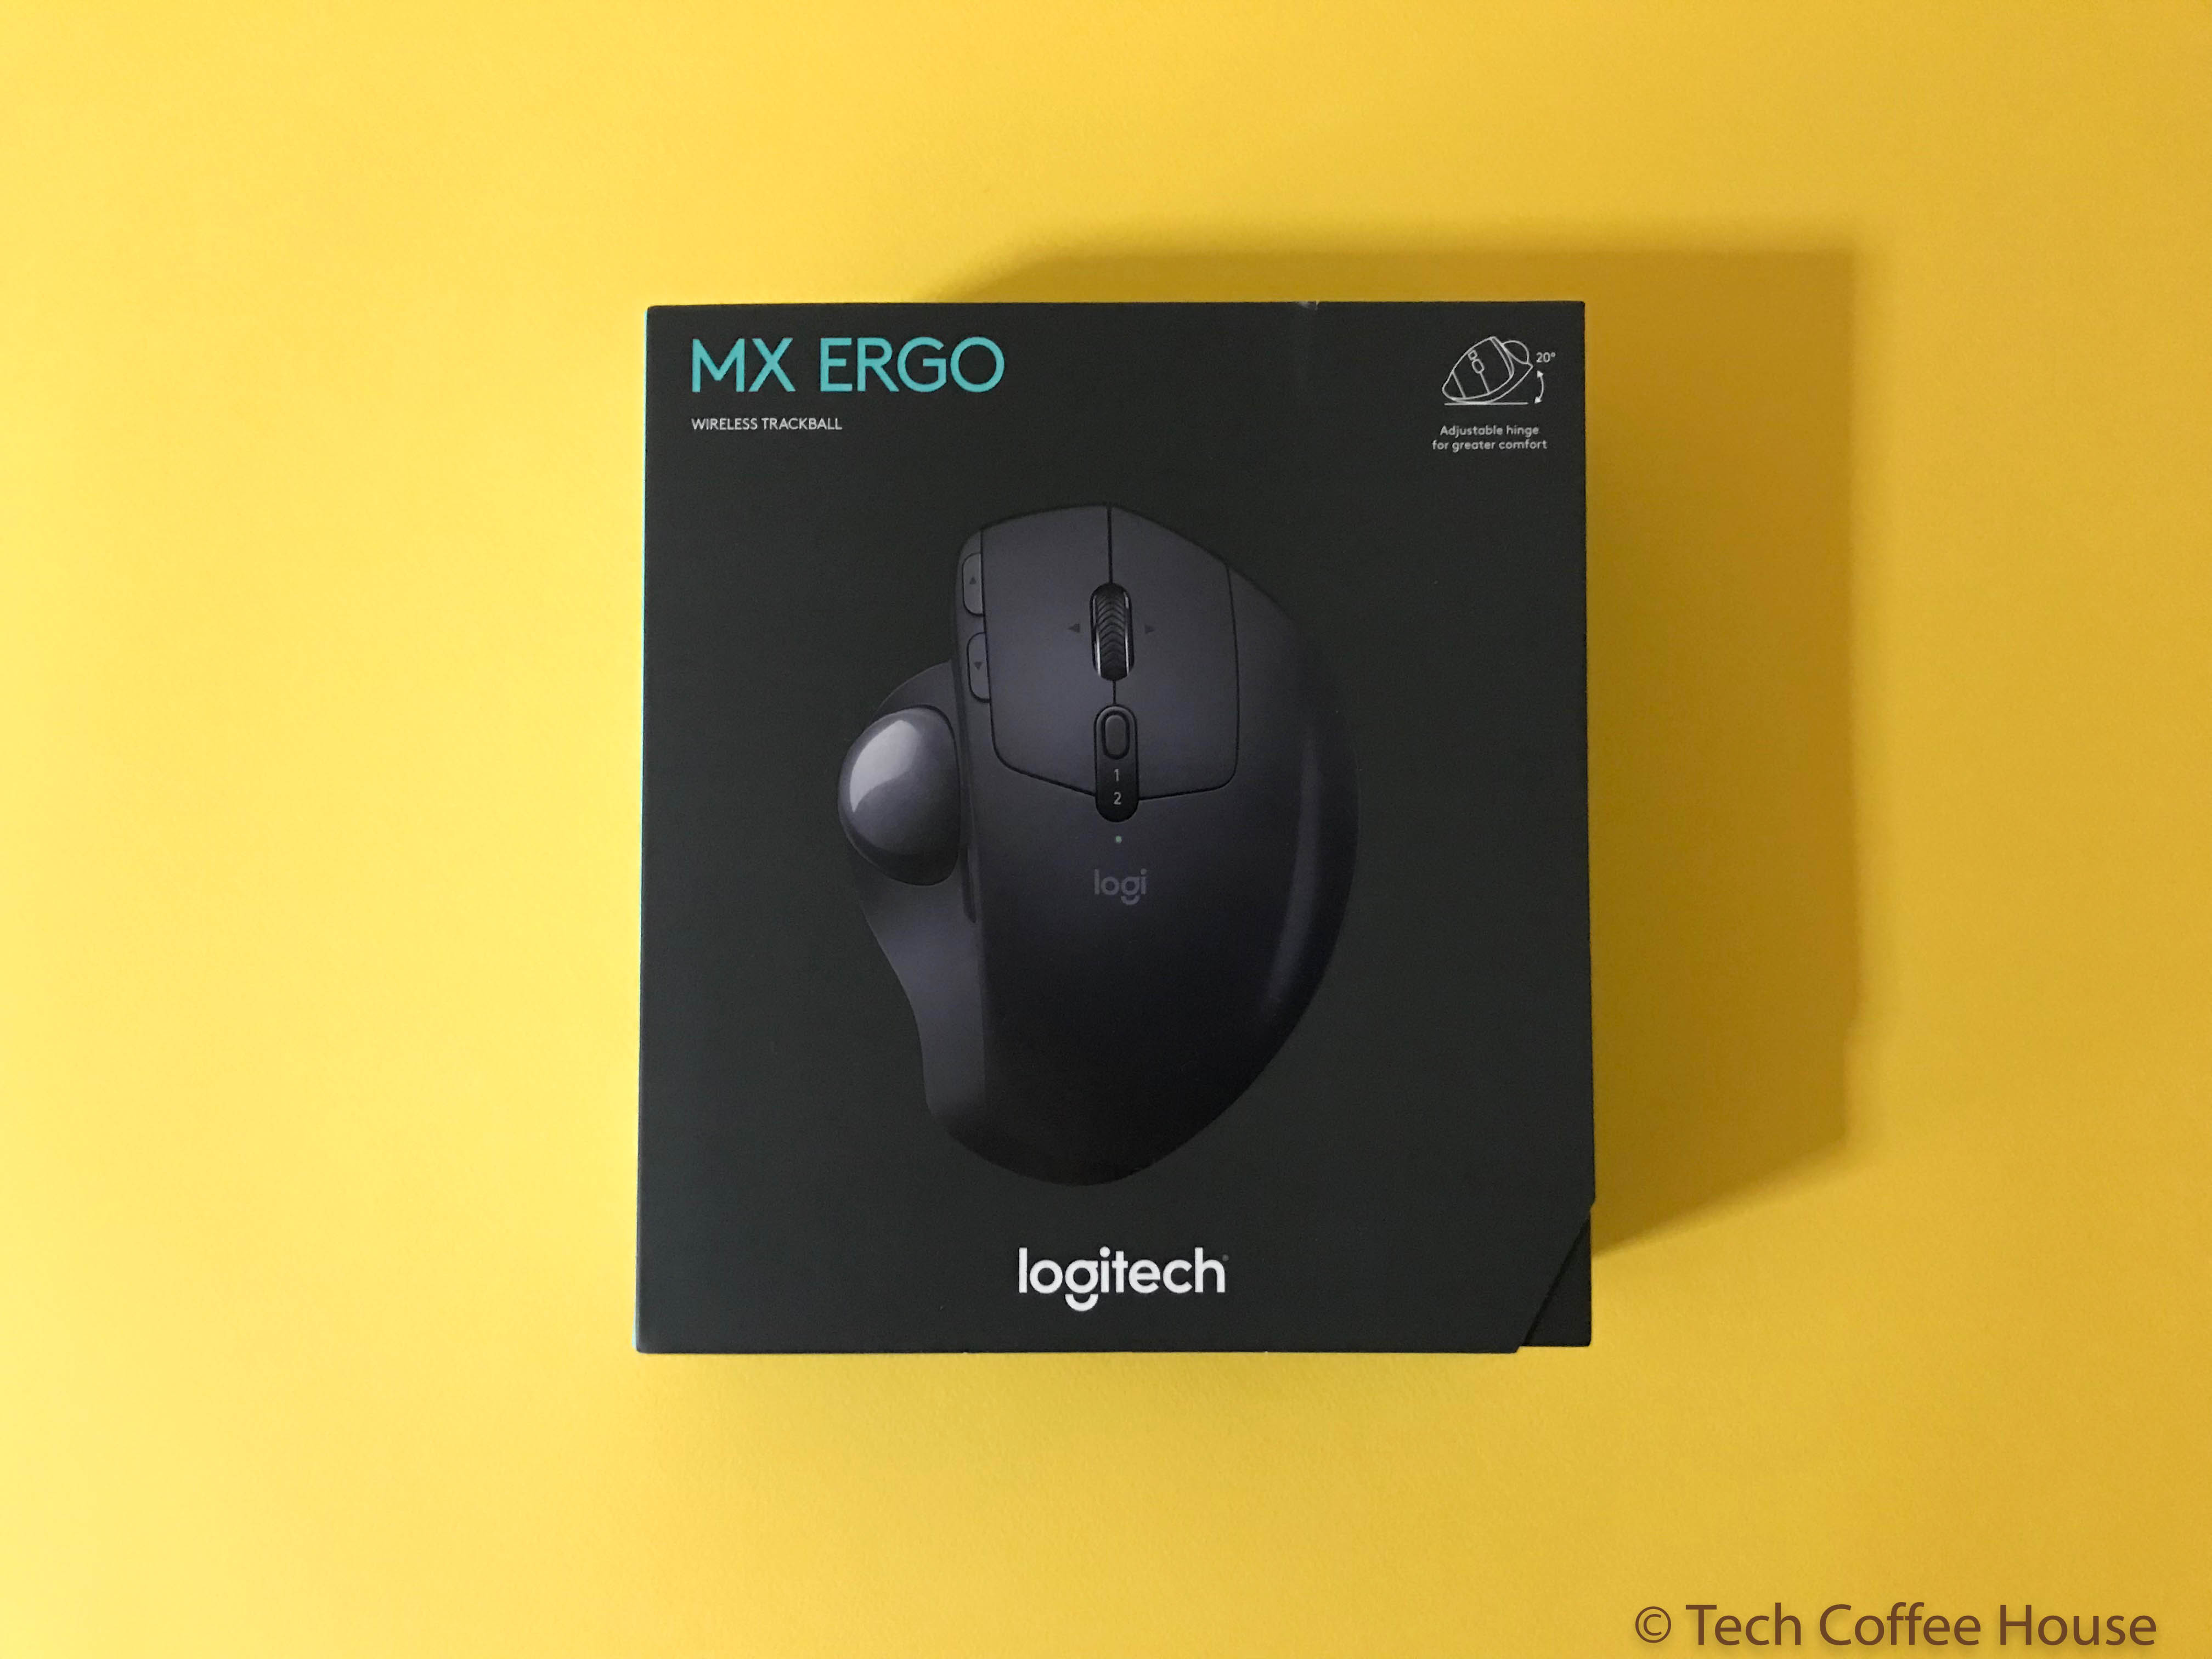 Review of the Logitech MX ERGO